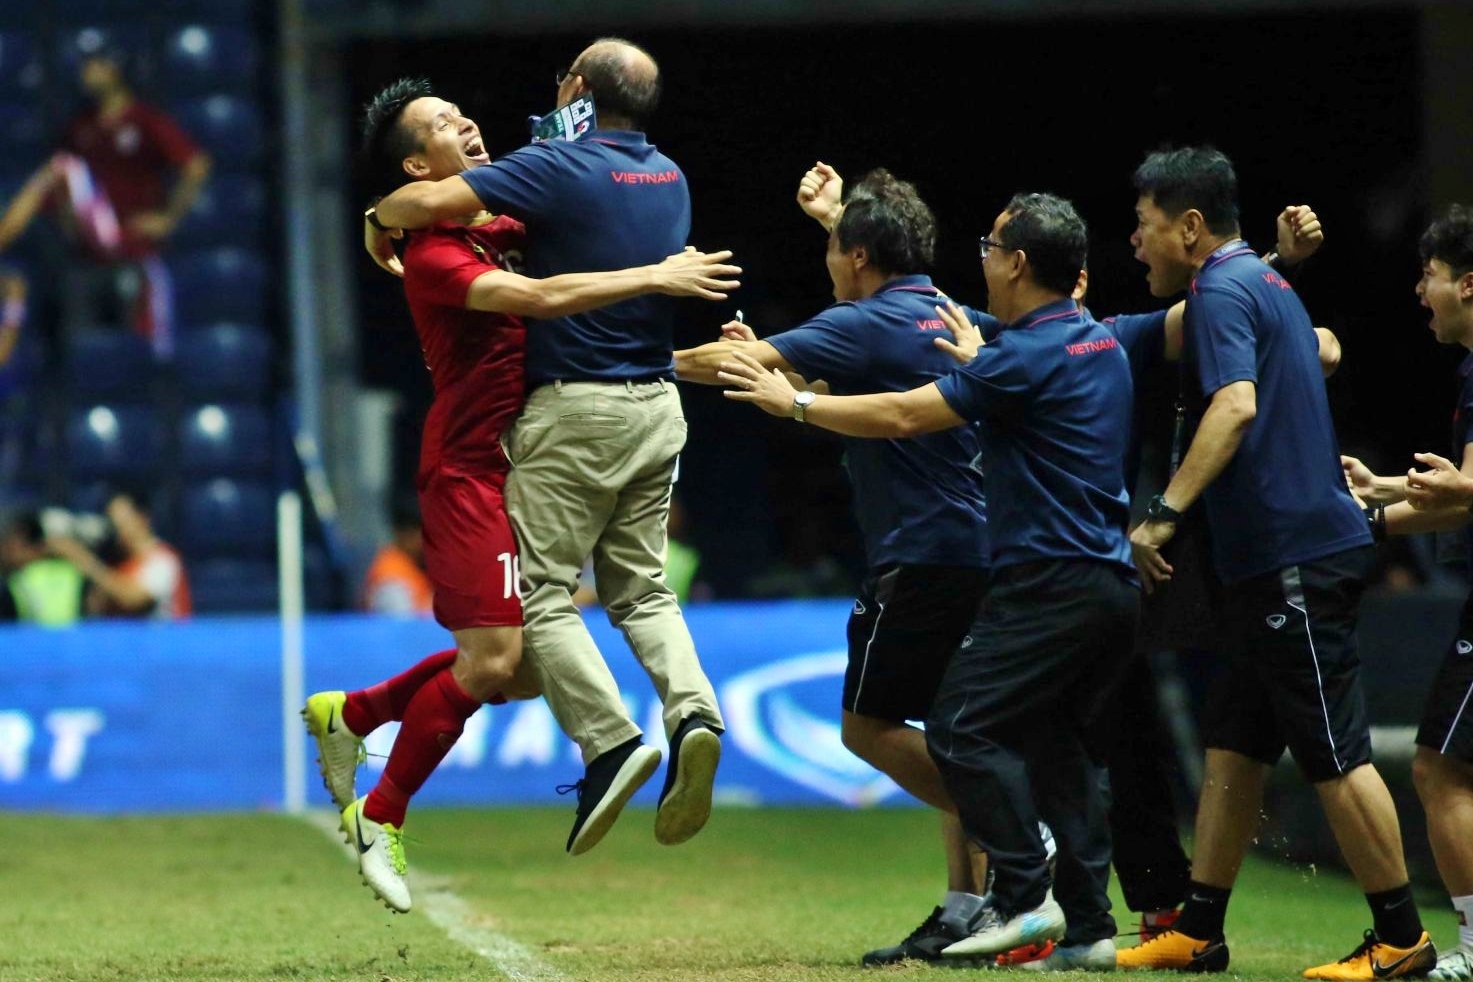 Niềm vui của đội tuyển Việt Nam khi vượt qua tuyền Thái Lan để giành quyền vào chơi chung kết King's Cup 2019